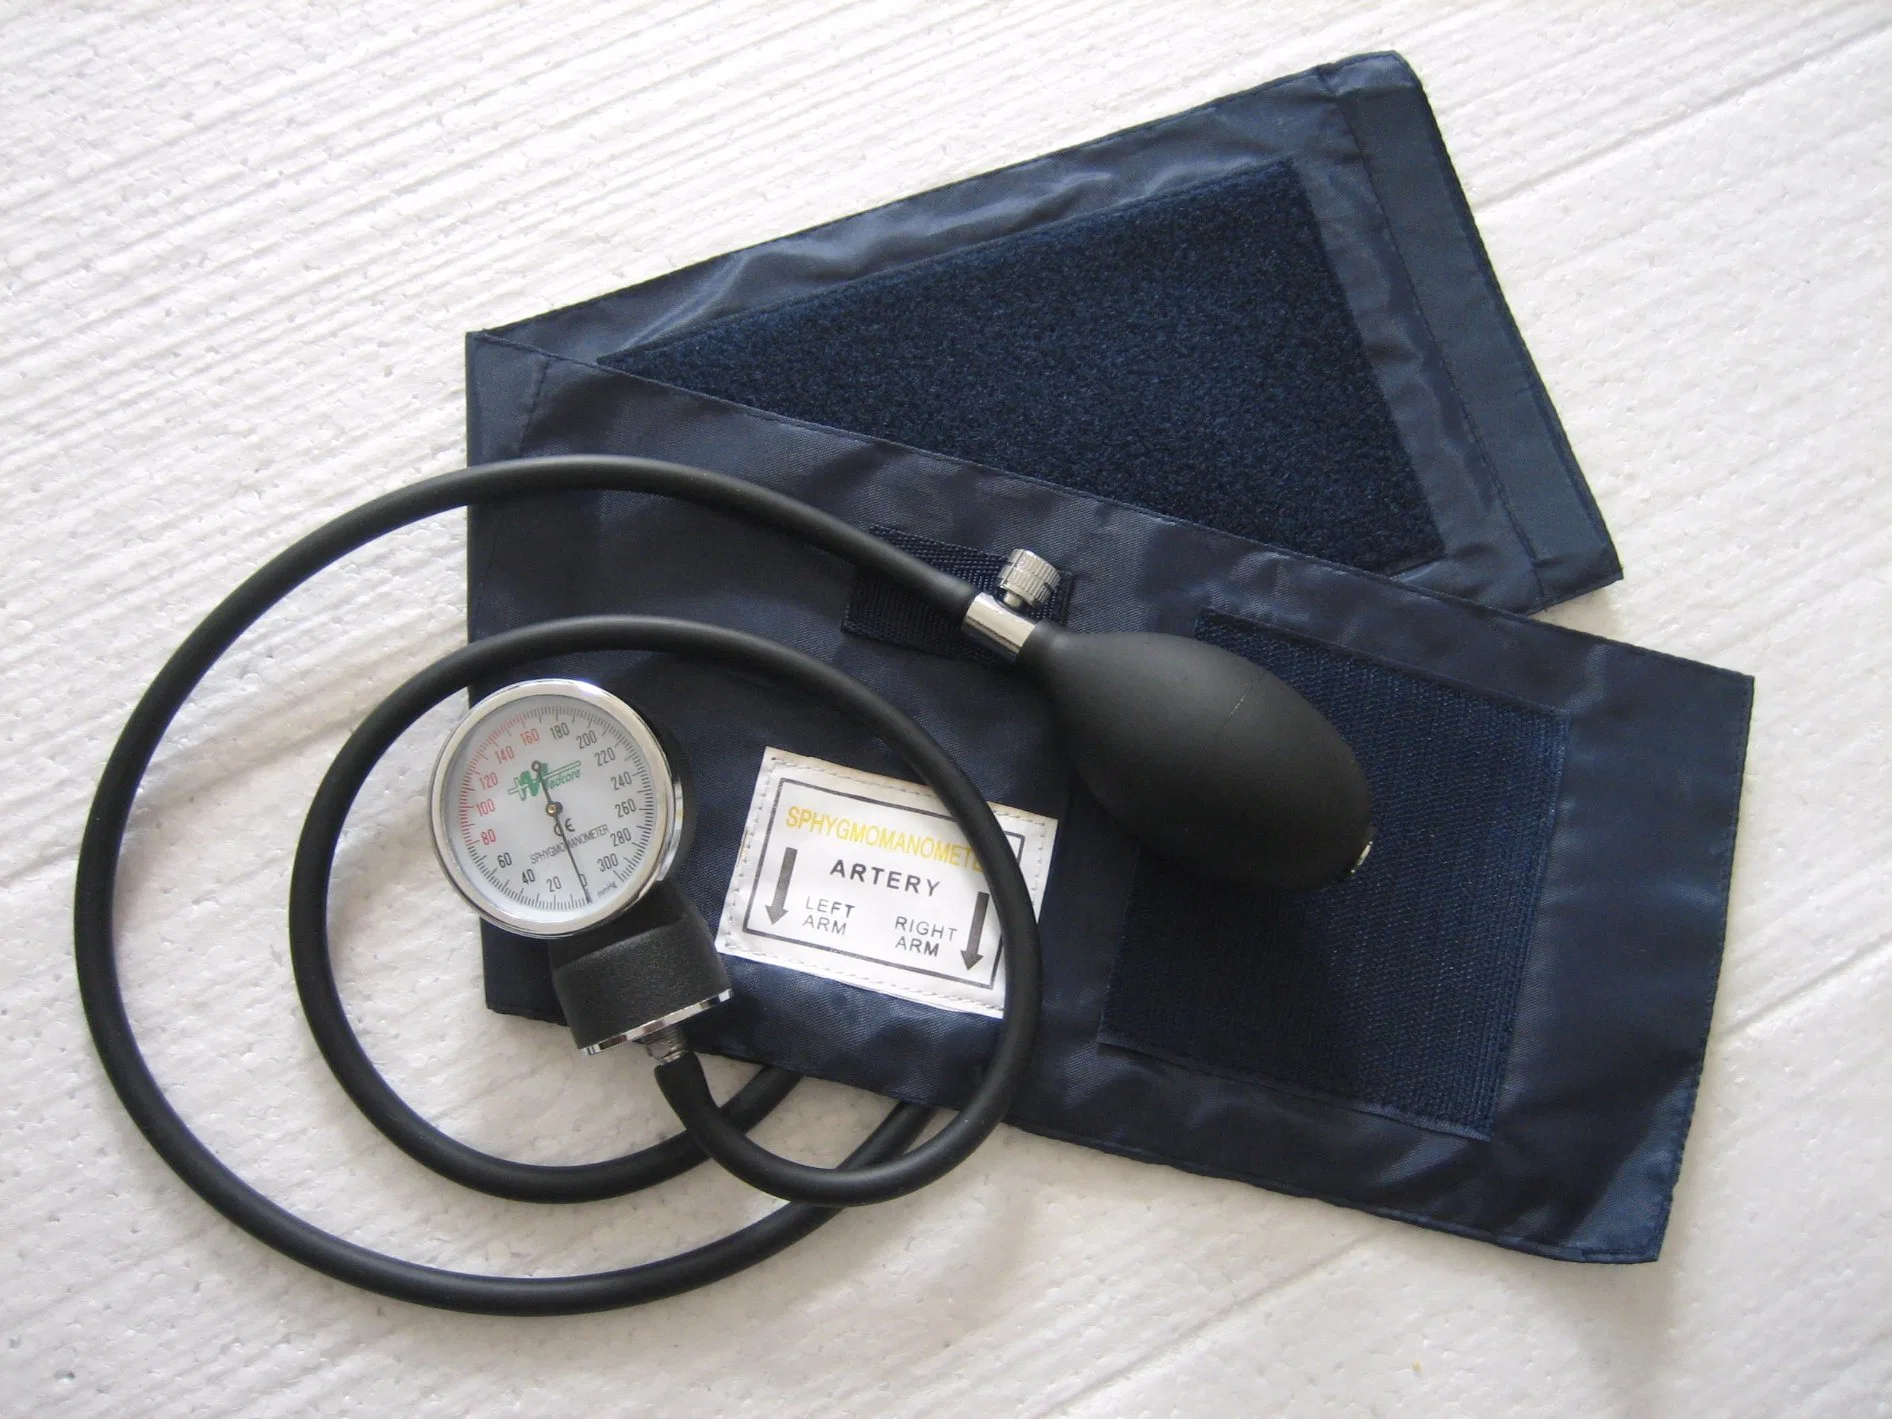 Portátil Tensiómetro aneroide Sphygmomanomete médico o del hogar